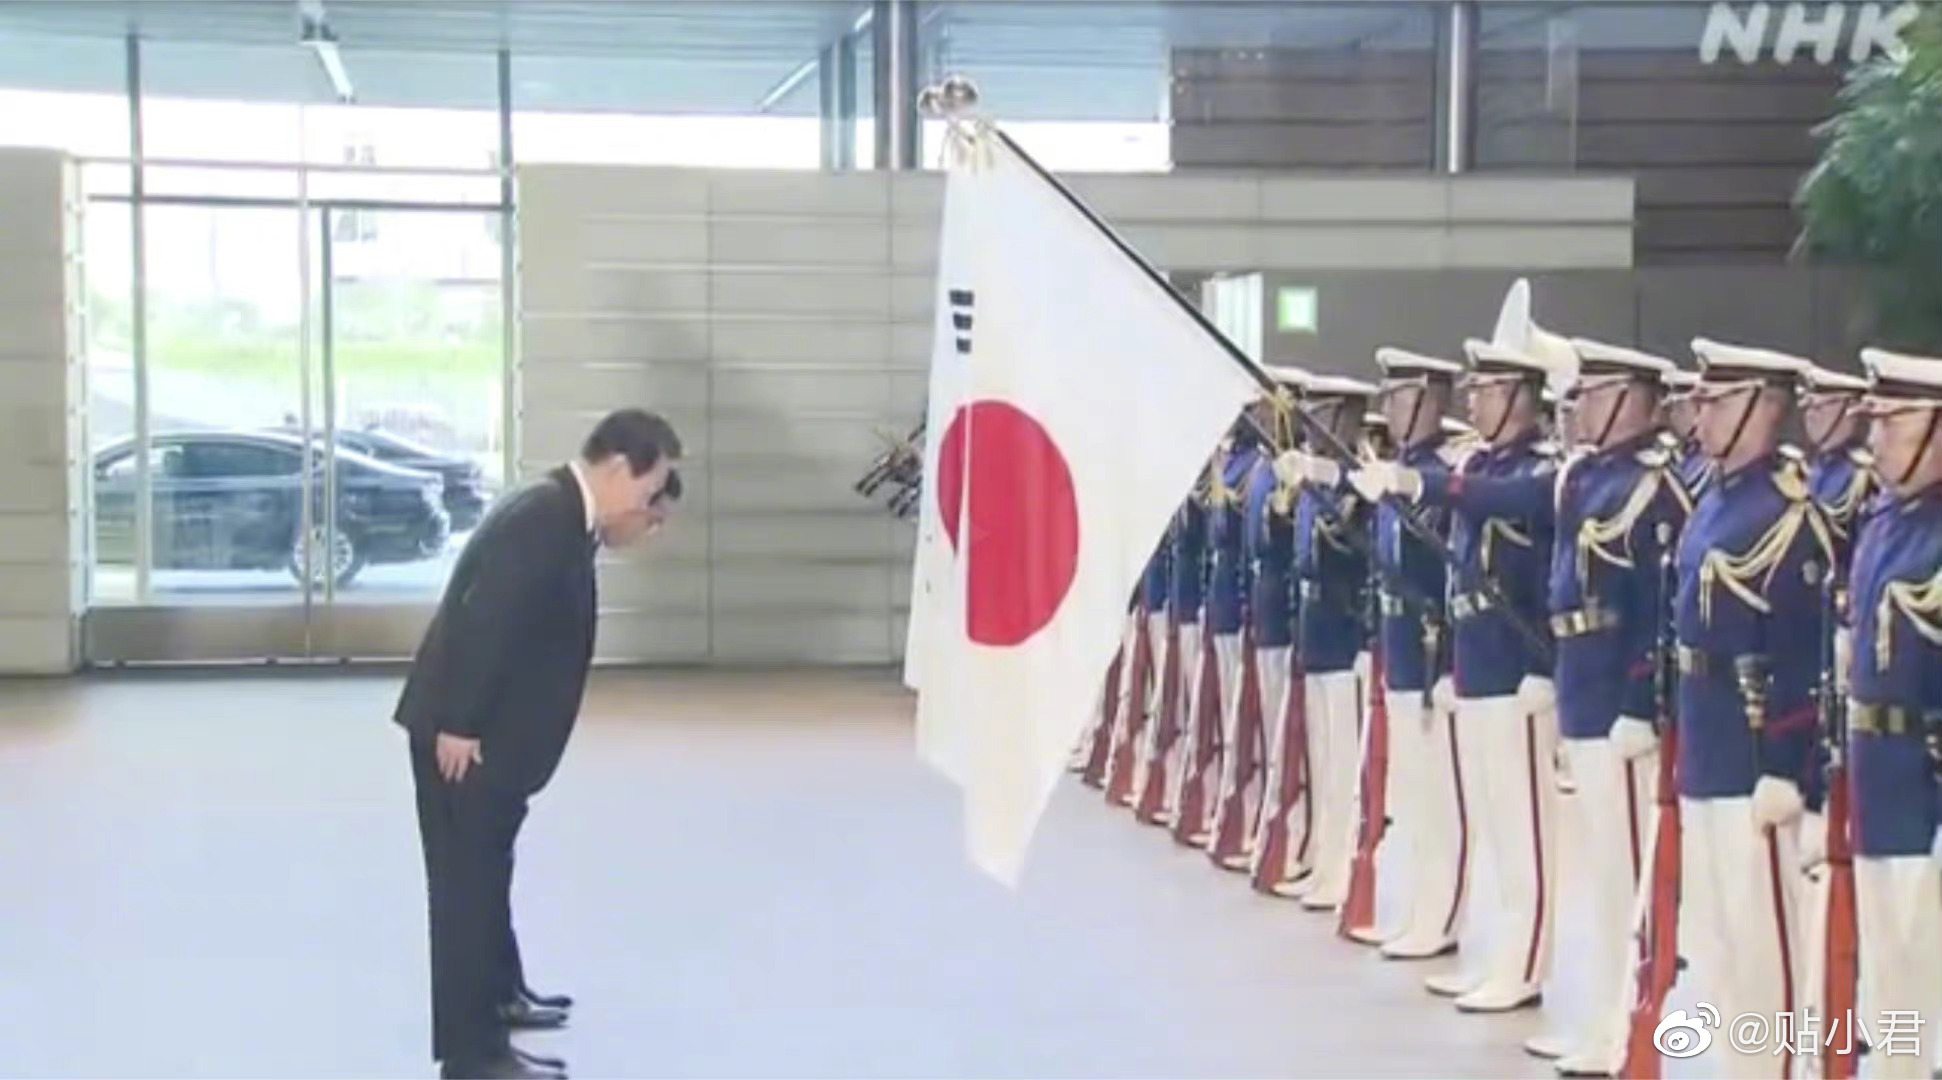 韩国总统尹锡悦访日 中国媒体称其为"屈辱外交" — 普通话主页